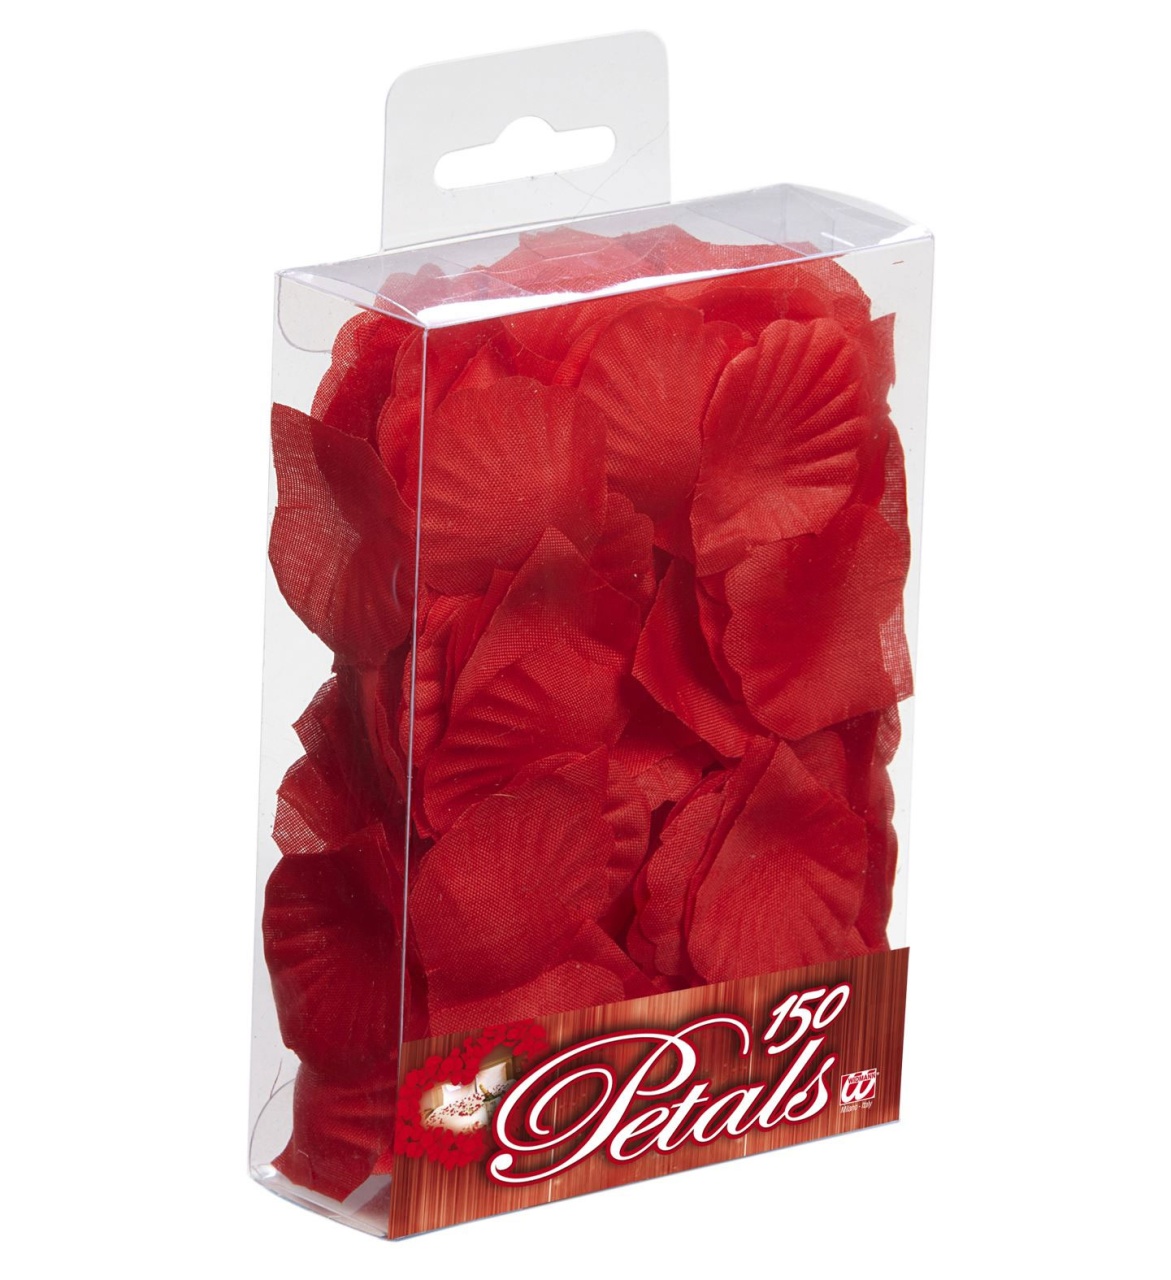 Deko Box mit 150 roten Rosenblättern